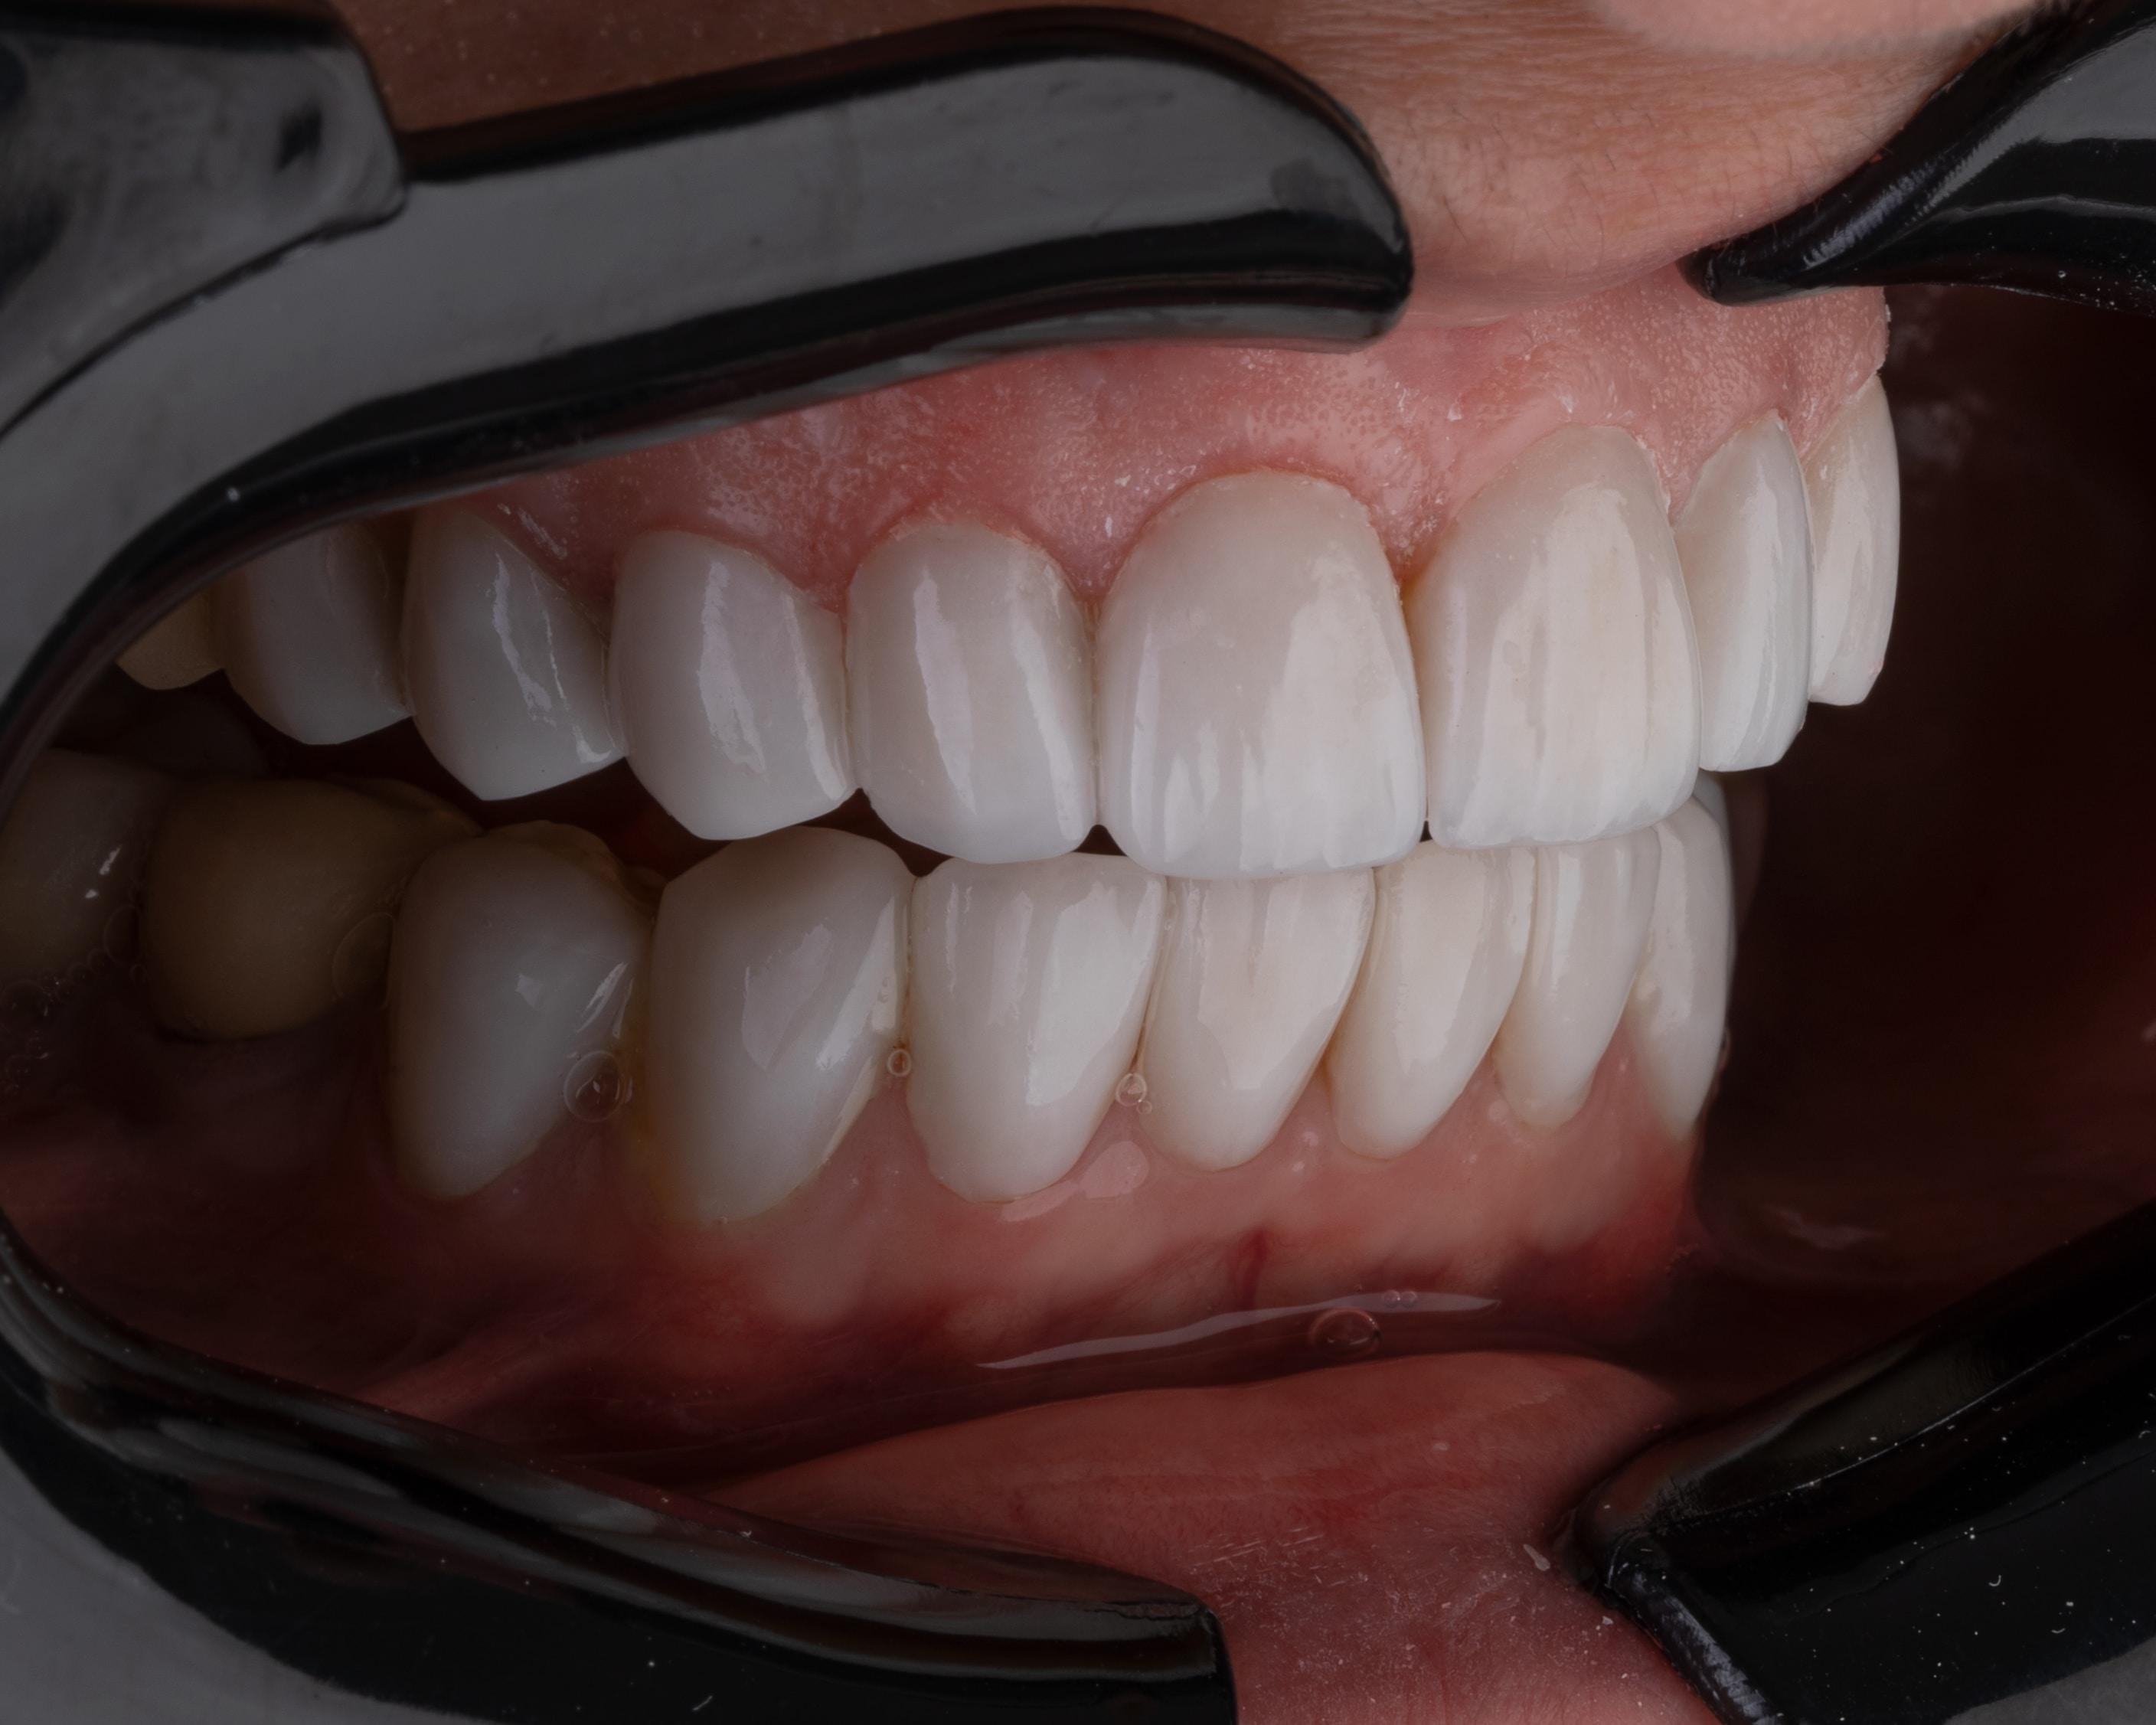 Wybielanie zębów w domu - jakie metody są najskuteczniejsze i najbezpieczniejsze? Skuteczne wybielanie zębów w domu. Jak wybielić zęby w domu? Domowe metody wybielania zębów. 